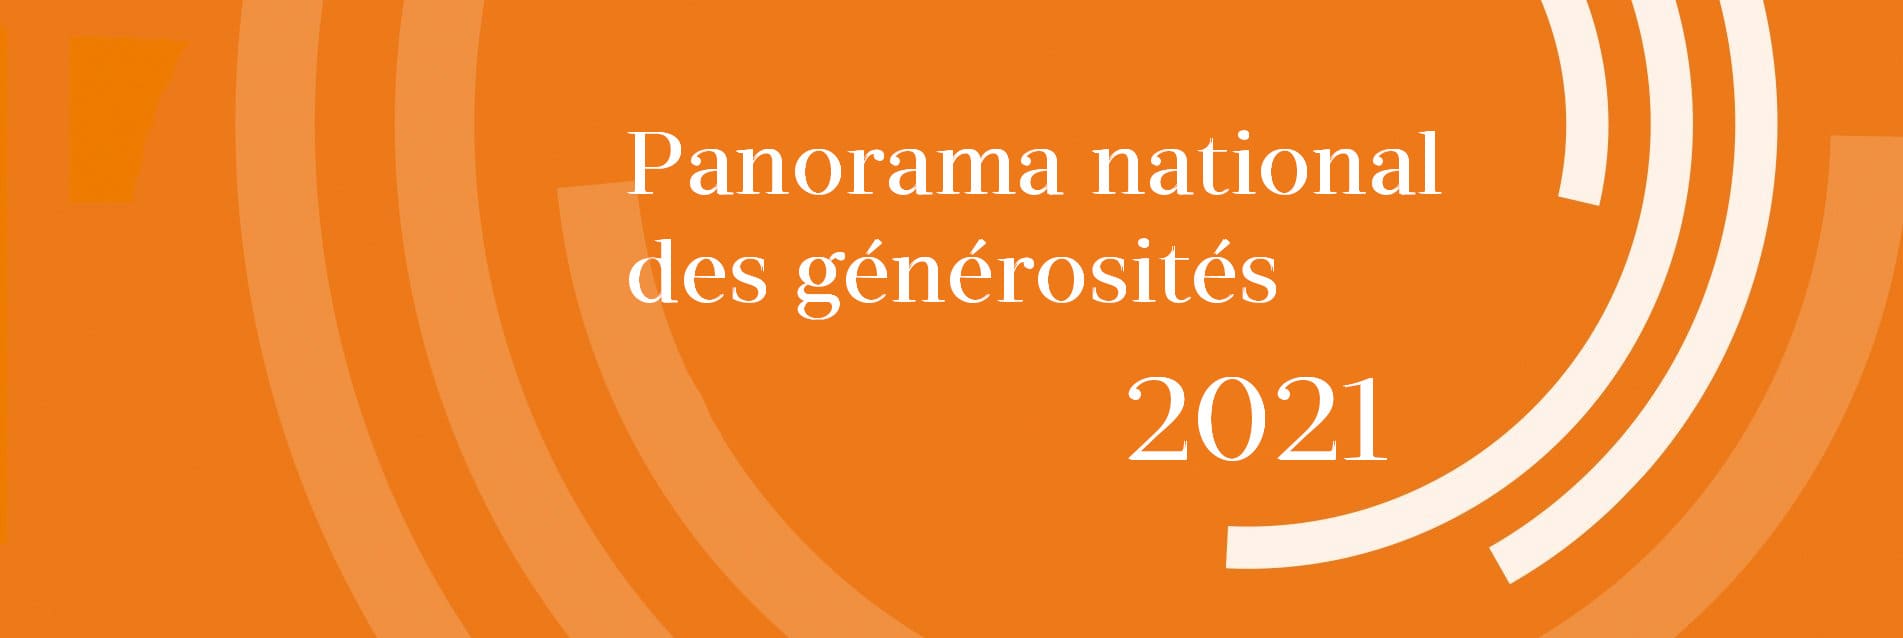 panorama_des_generosites_2021 couverture (1)